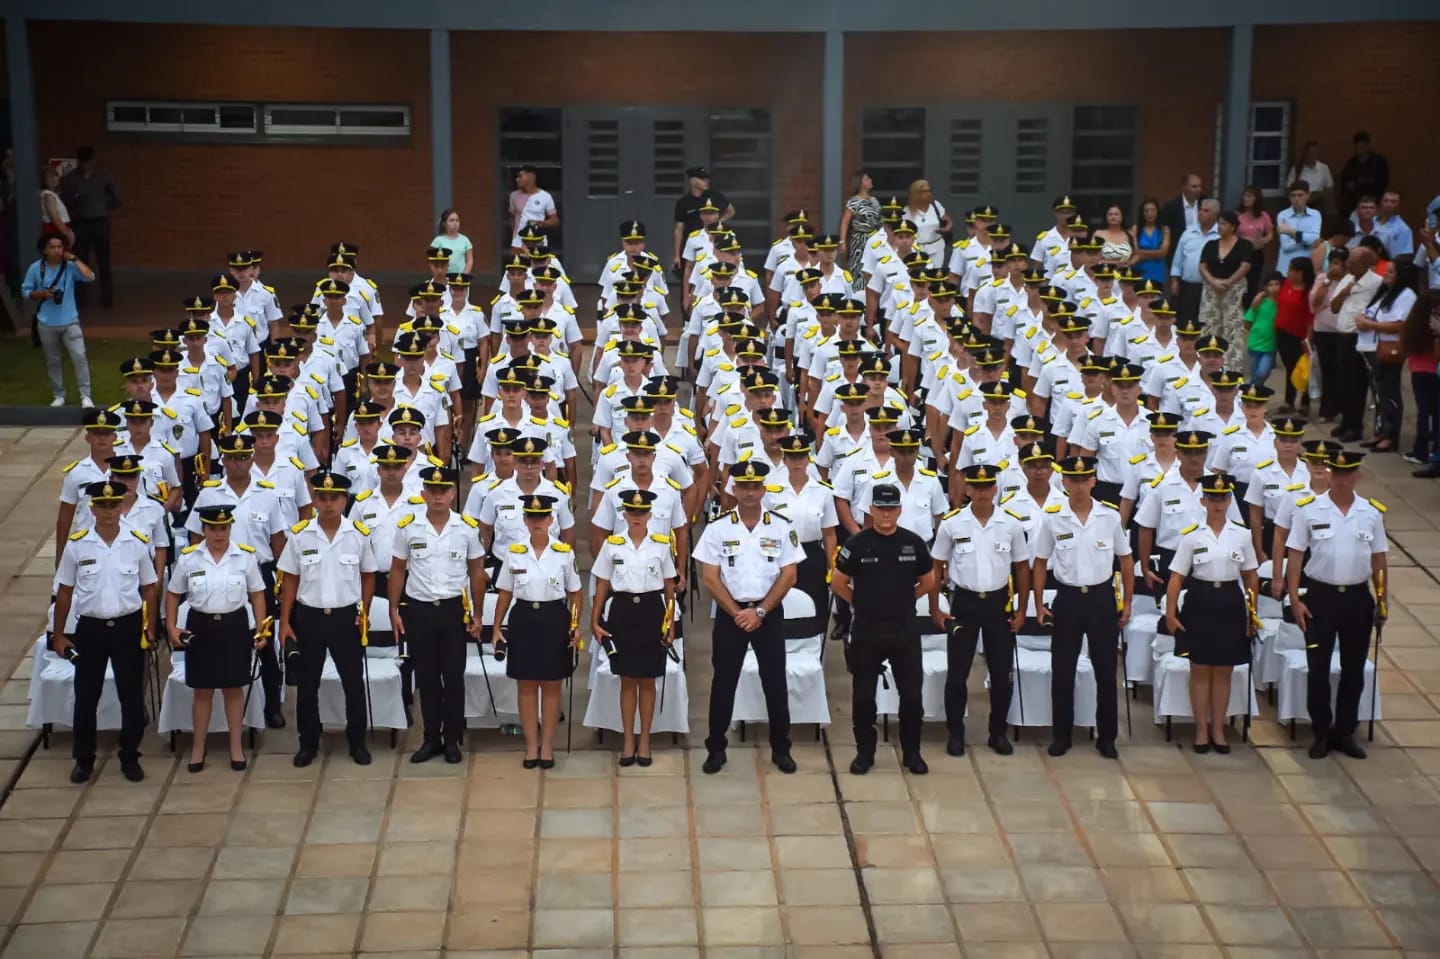 La Policía cuenta con 139 nuevos oficiales licenciados en Seguridad